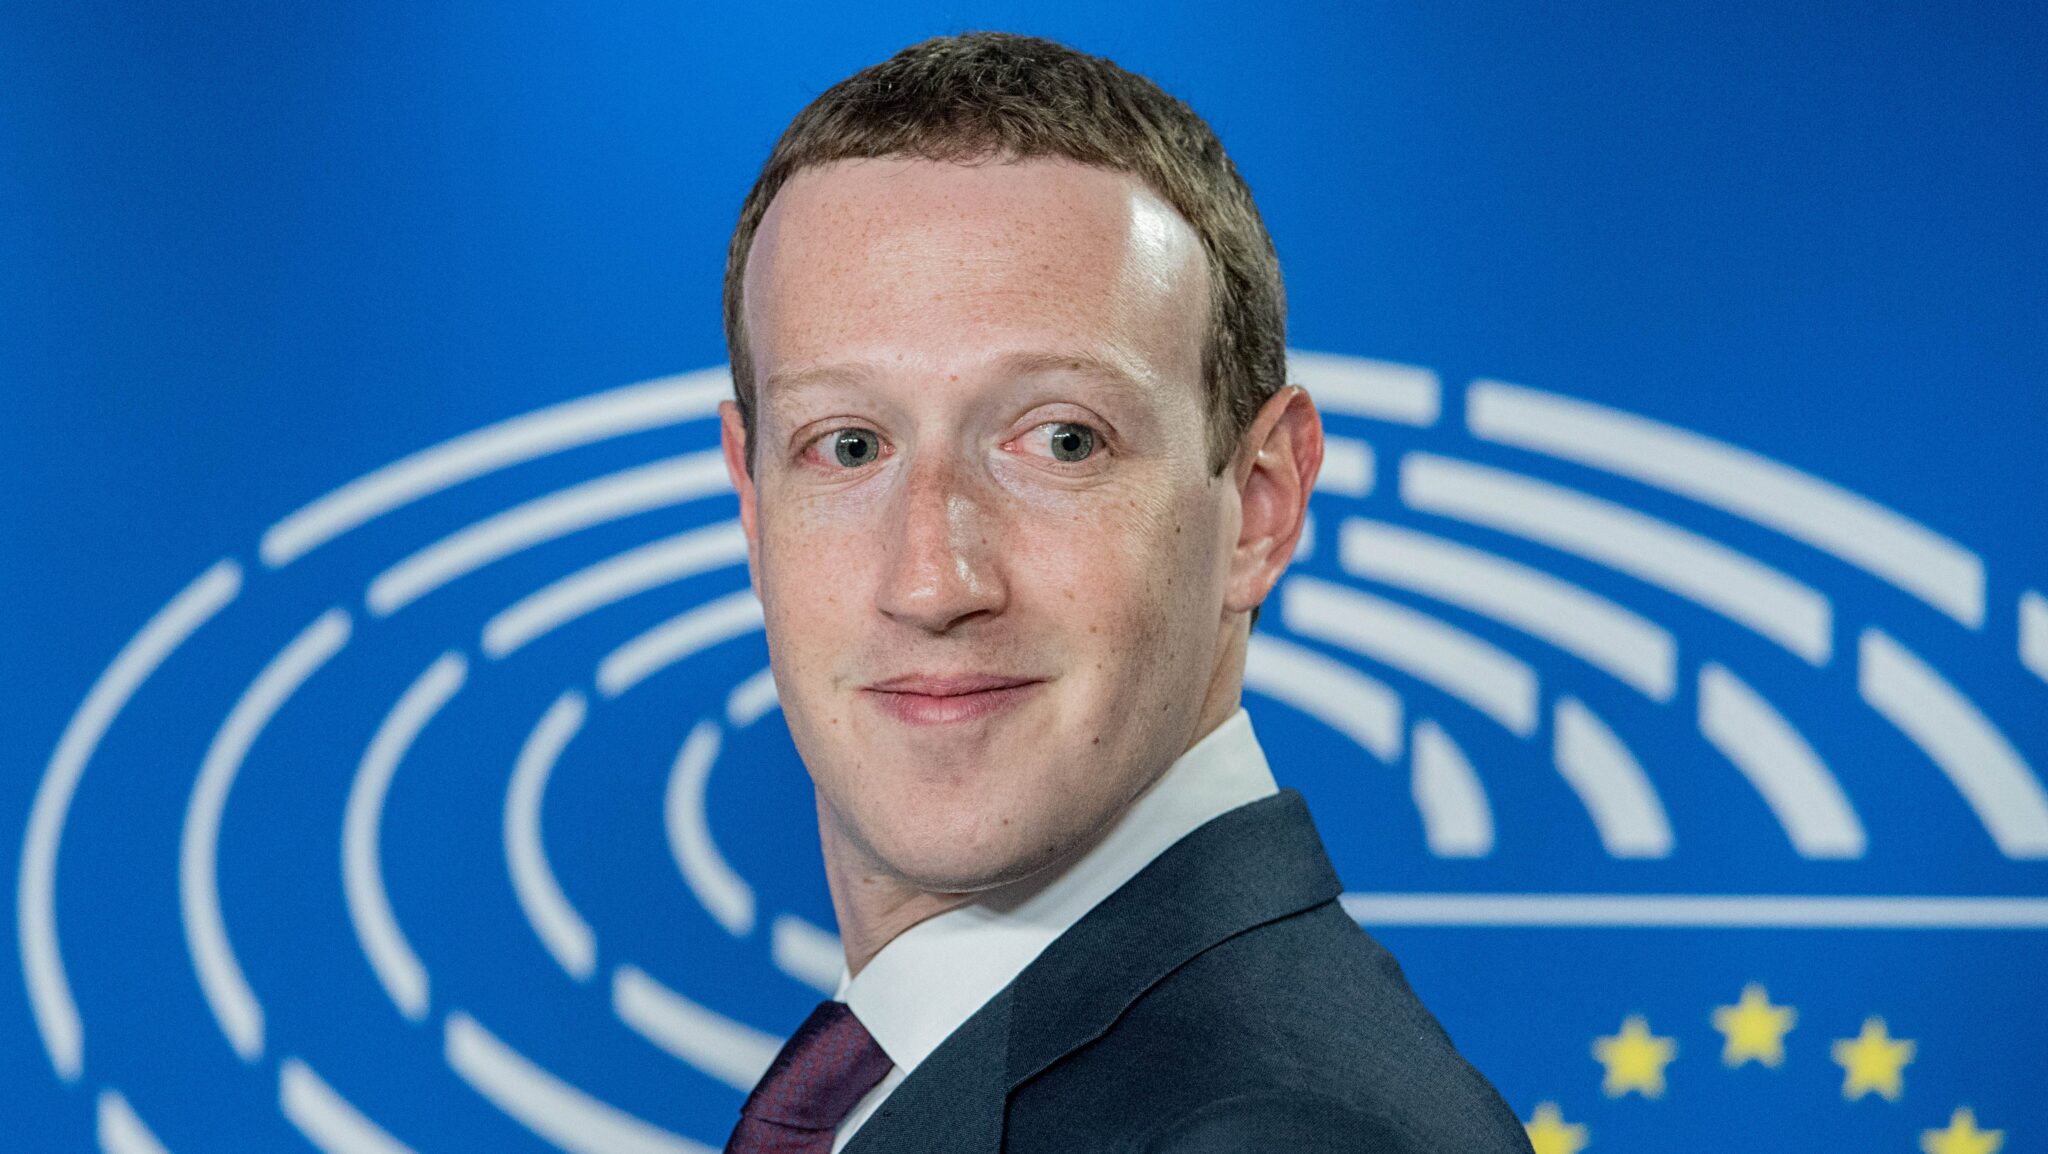 Mark Zuckerberg Net Worth 2021 Car, Salary, Business, Bio